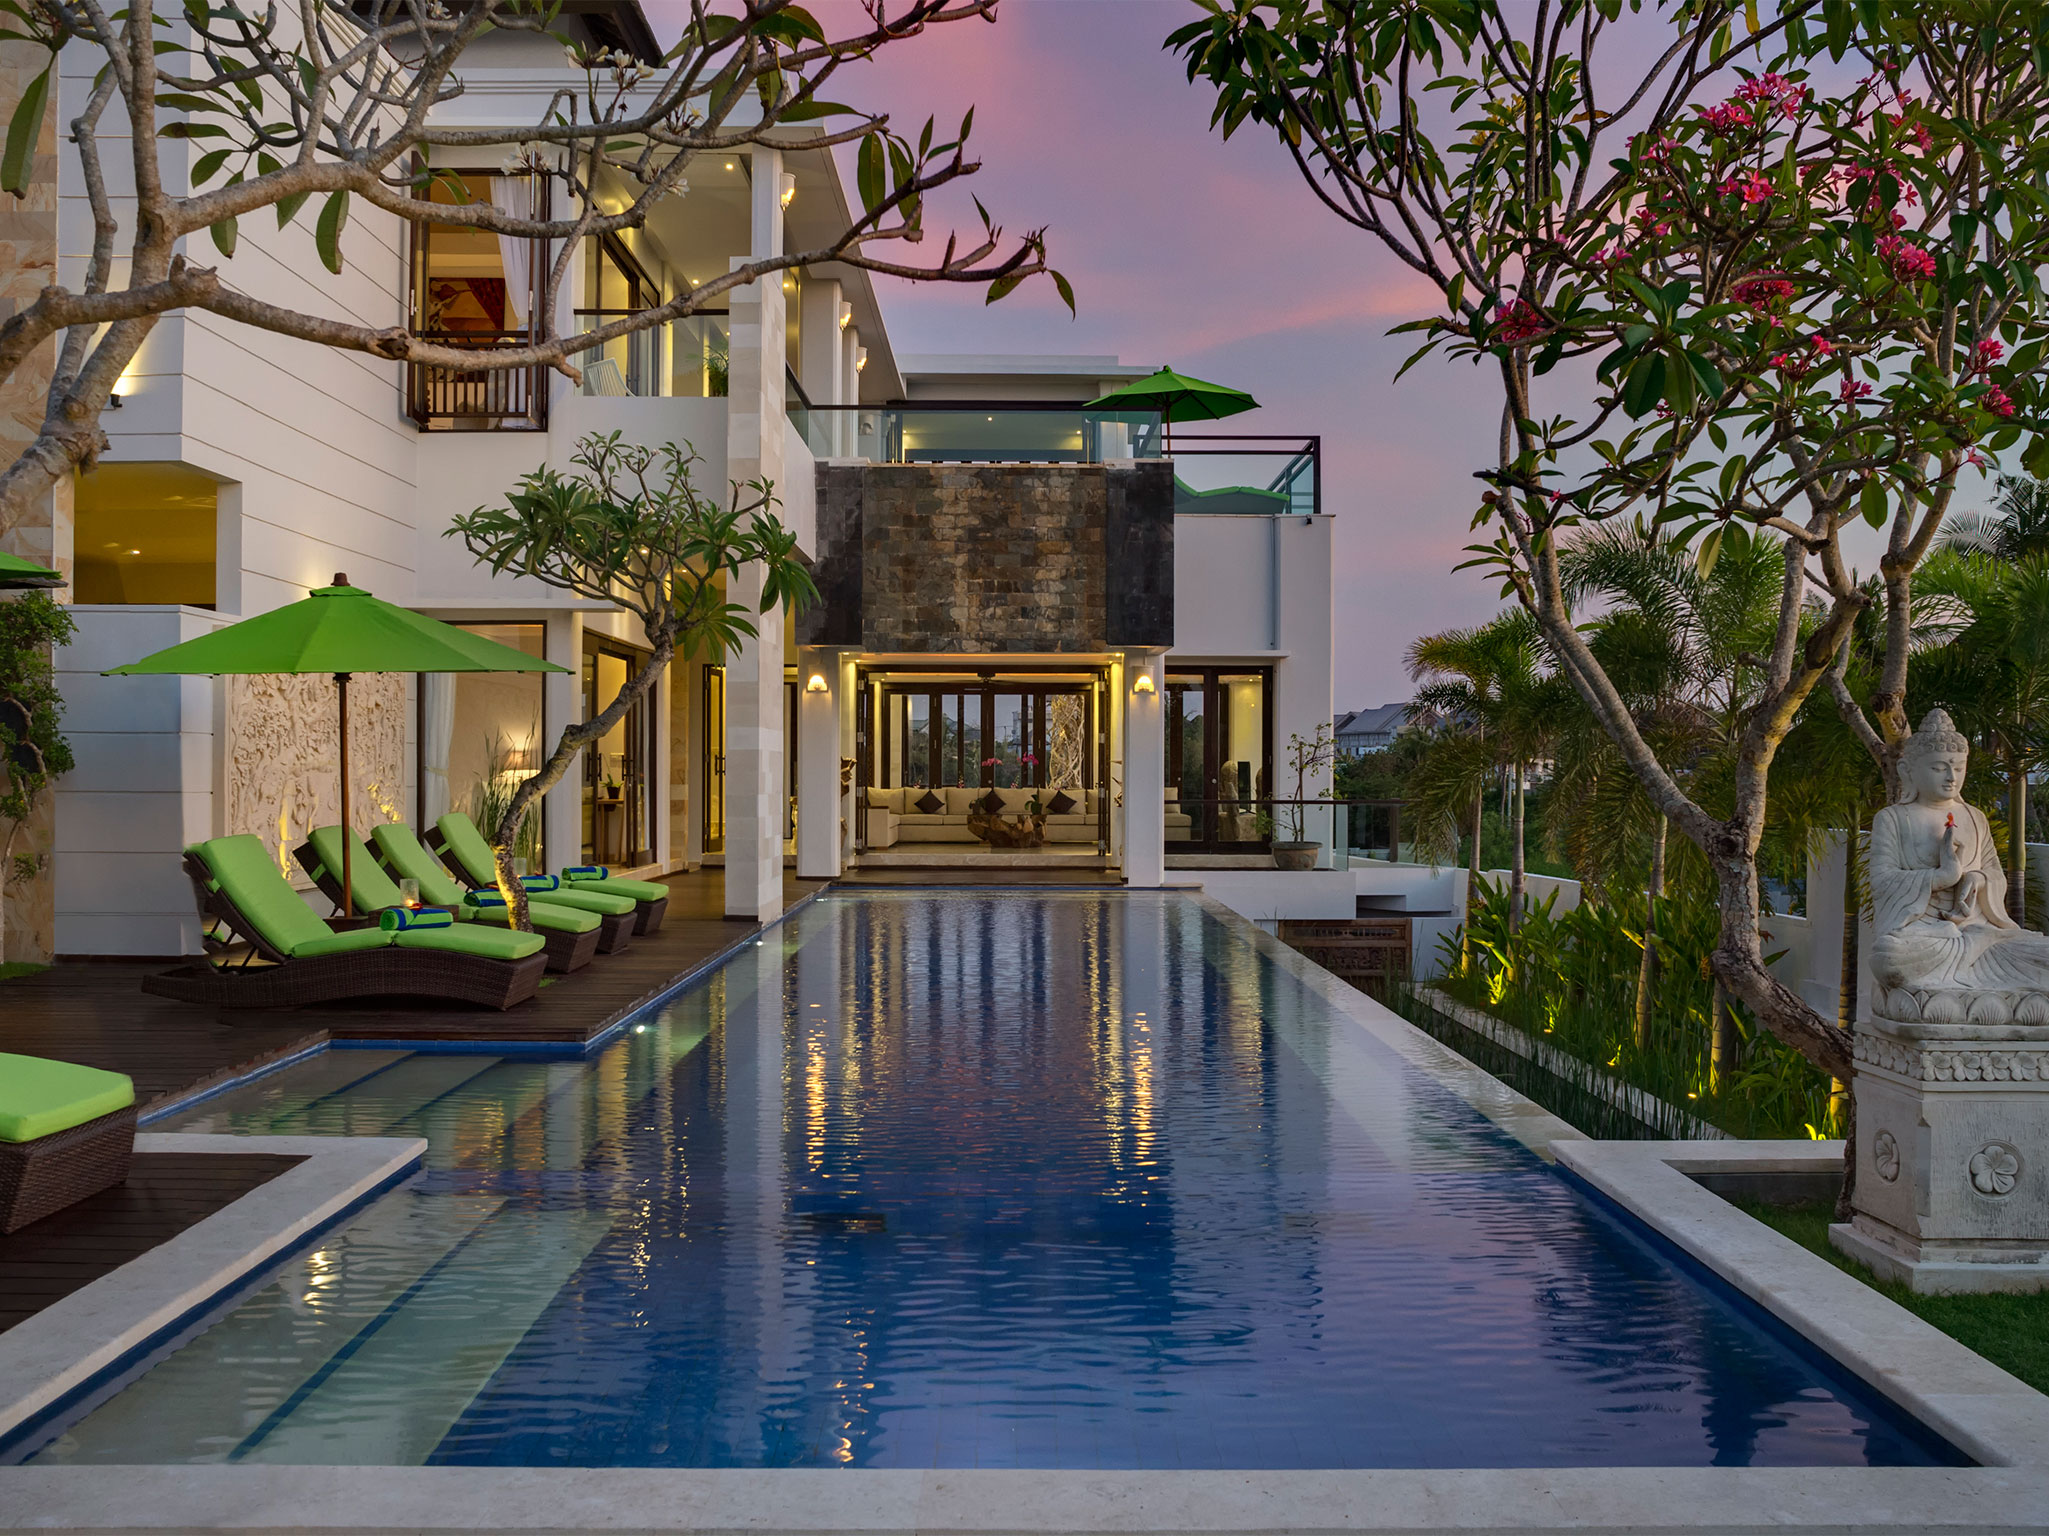 Villa Luwih - Pool and villa at dusk - Villa Luwih, Canggu, Bali